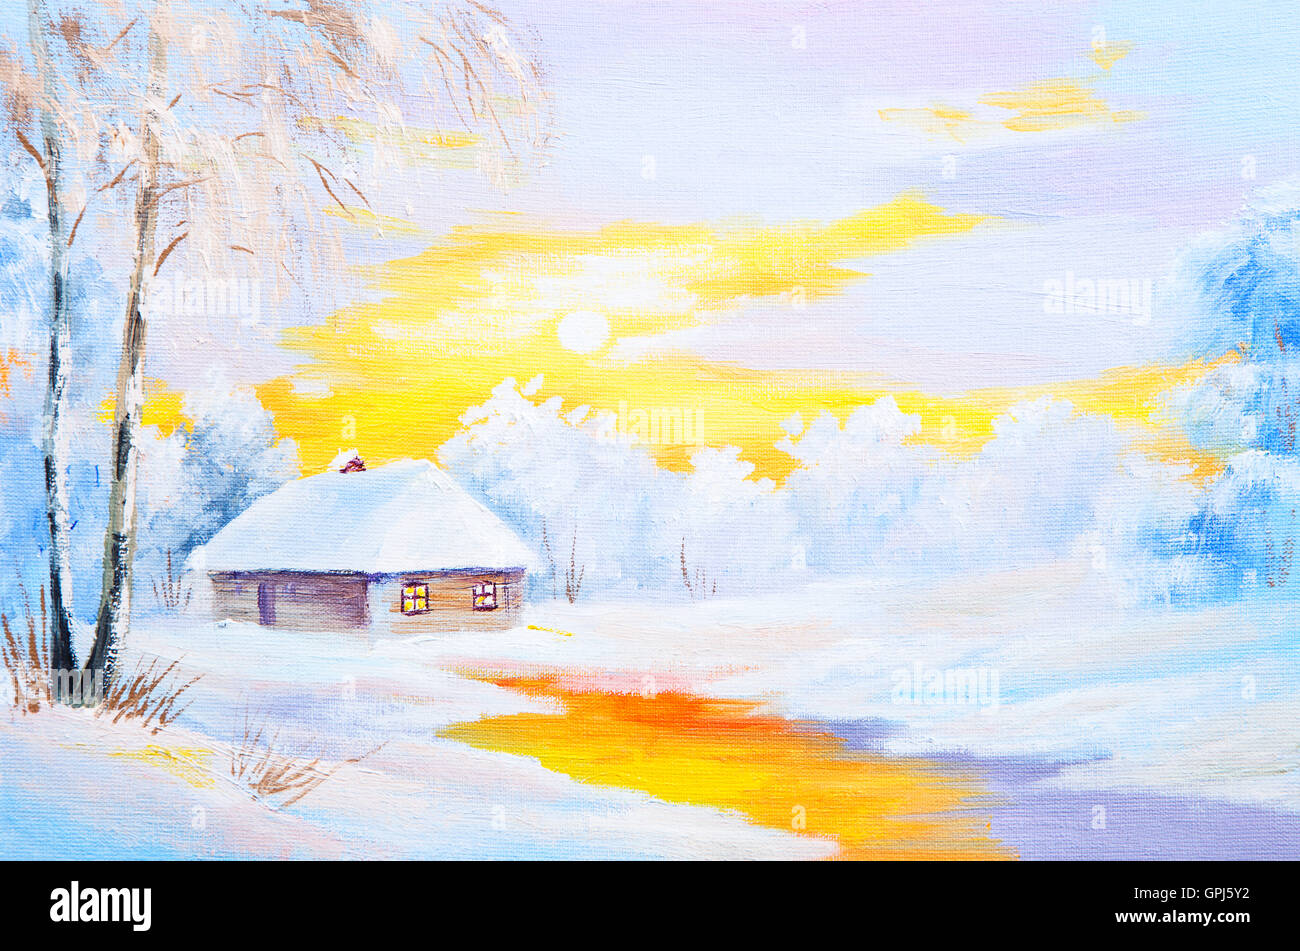 Peinture à l'huile de paysage de neige hiver Banque D'Images